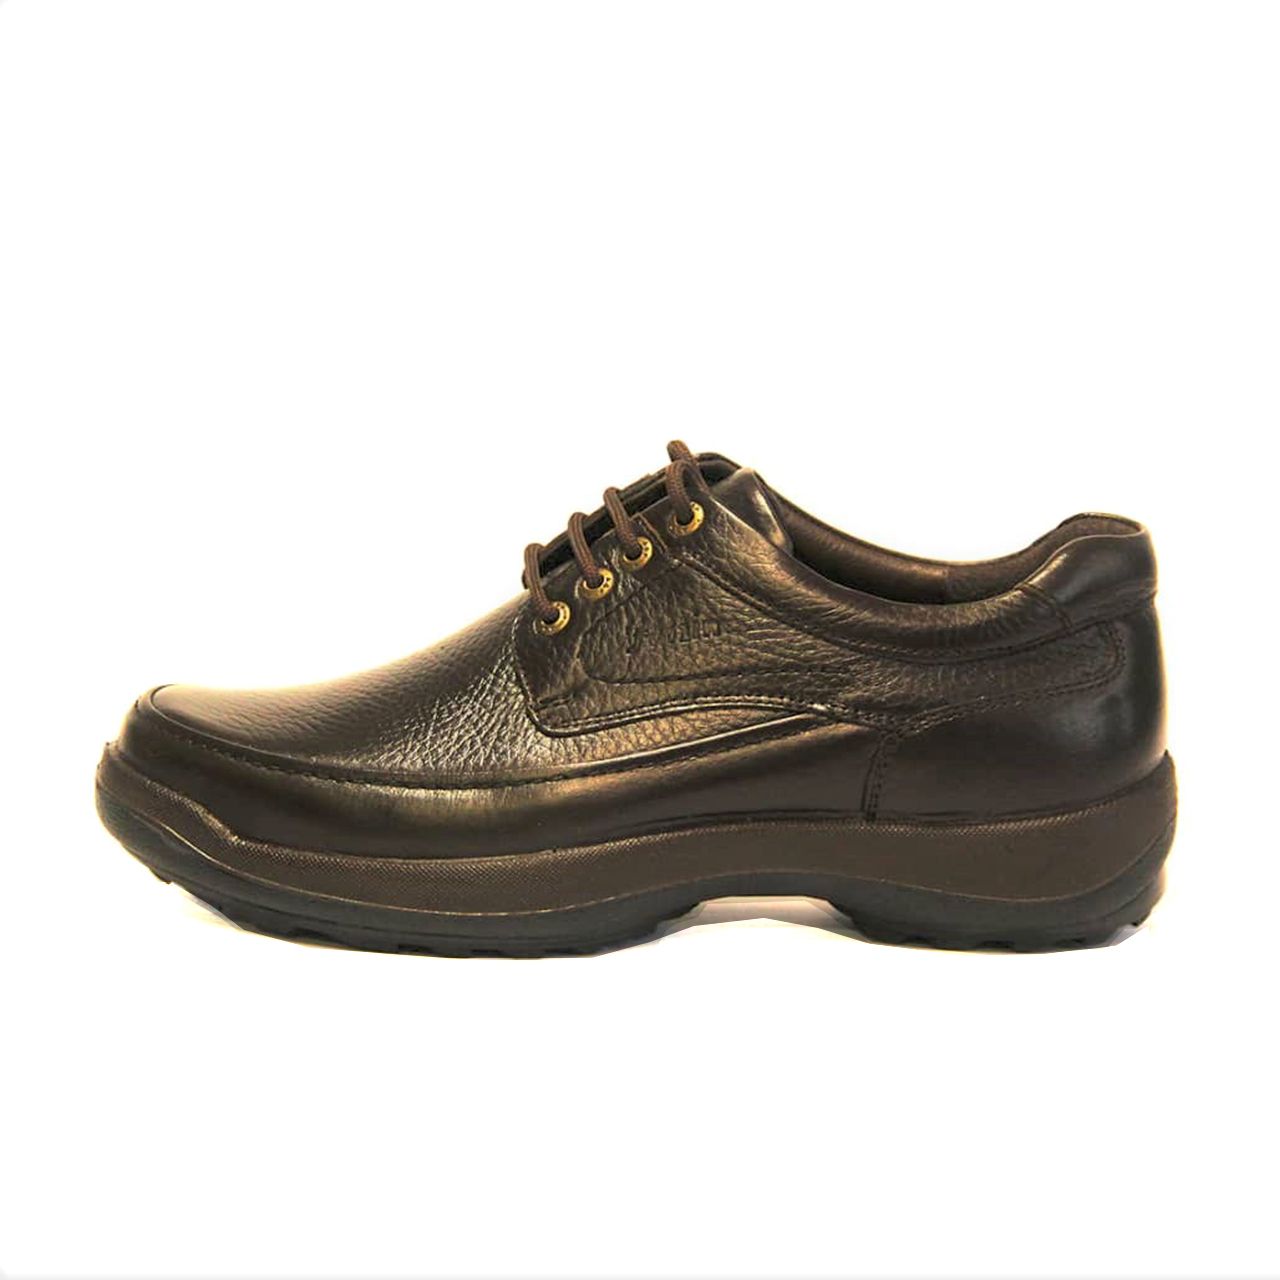 کفش روزمره مردانه فرزین کد mbb002 رنگ قهوه ای -  - 1